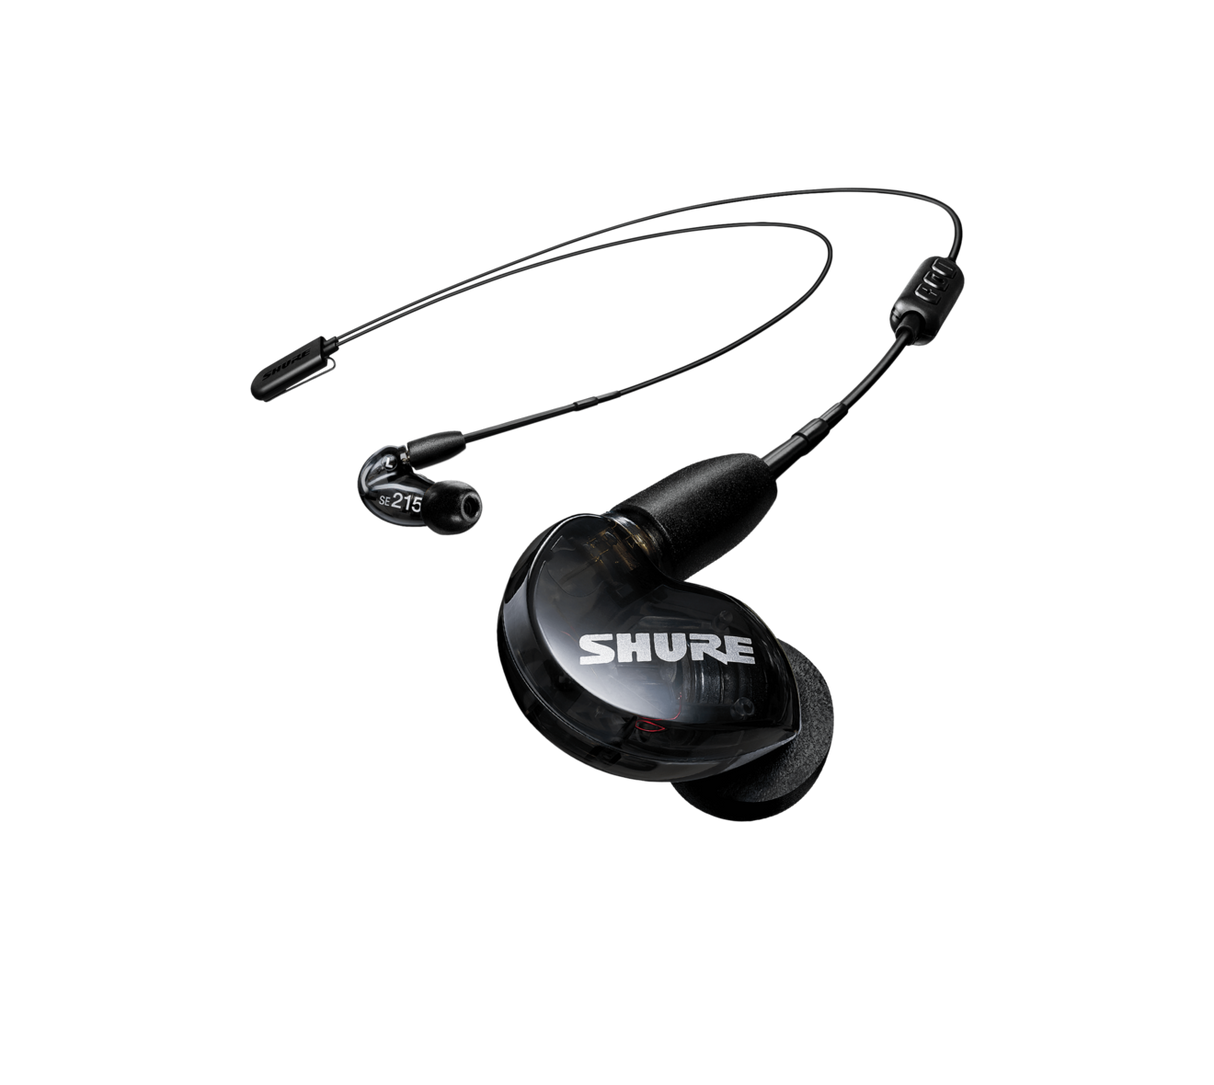 Shure AONIC 215 WIRELESS, Belaidės ausinės (įvairių spalvų)- juoda